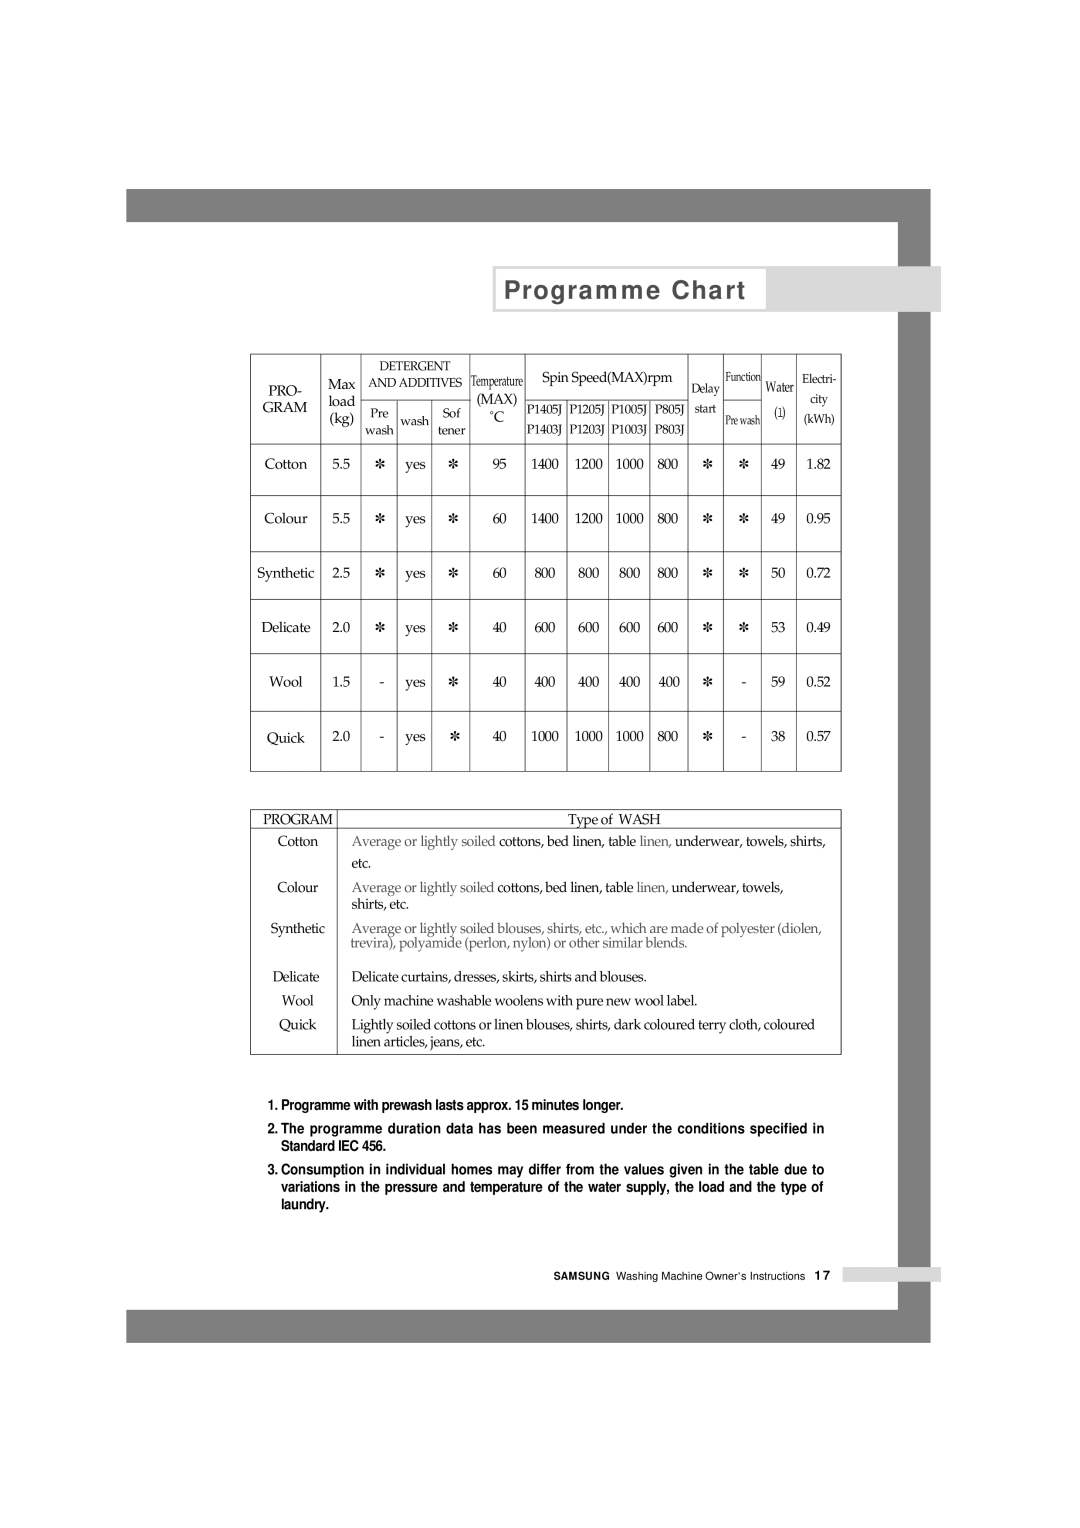 Samsung P1003J, P805J, P1405J, P1005j, P1205J, P803J, P1403J, P1203J manual Programme Chart 